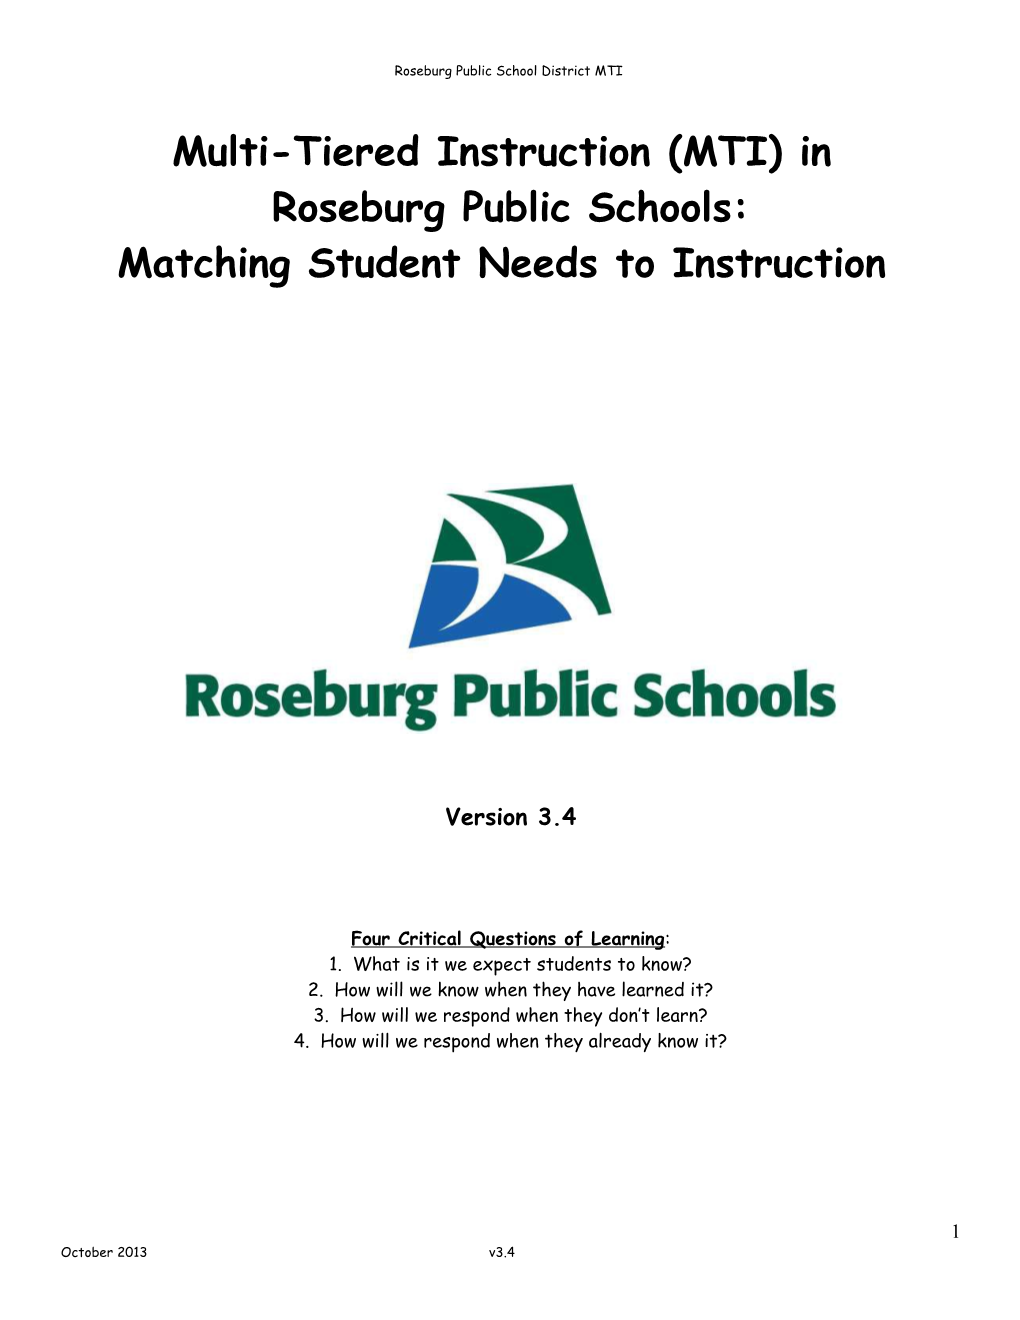 PBIS in Roseburg Public Schools